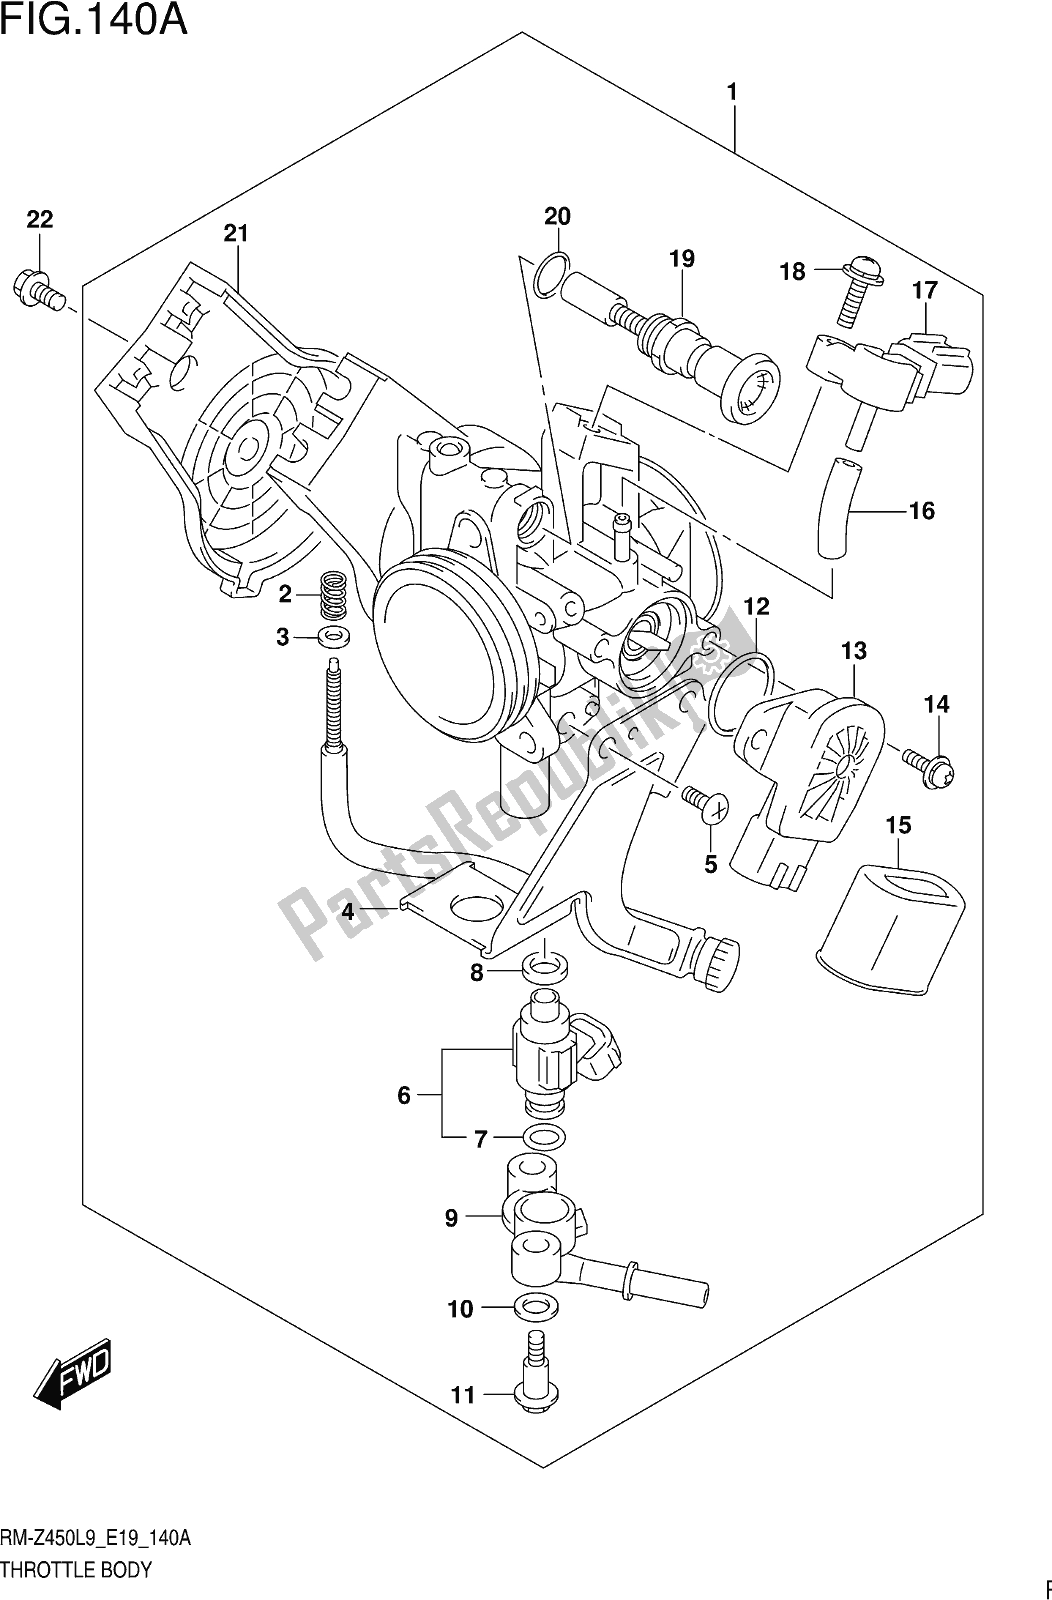 Alle onderdelen voor de Fig. 140a Throttle Body van de Suzuki RM-Z 450 2019